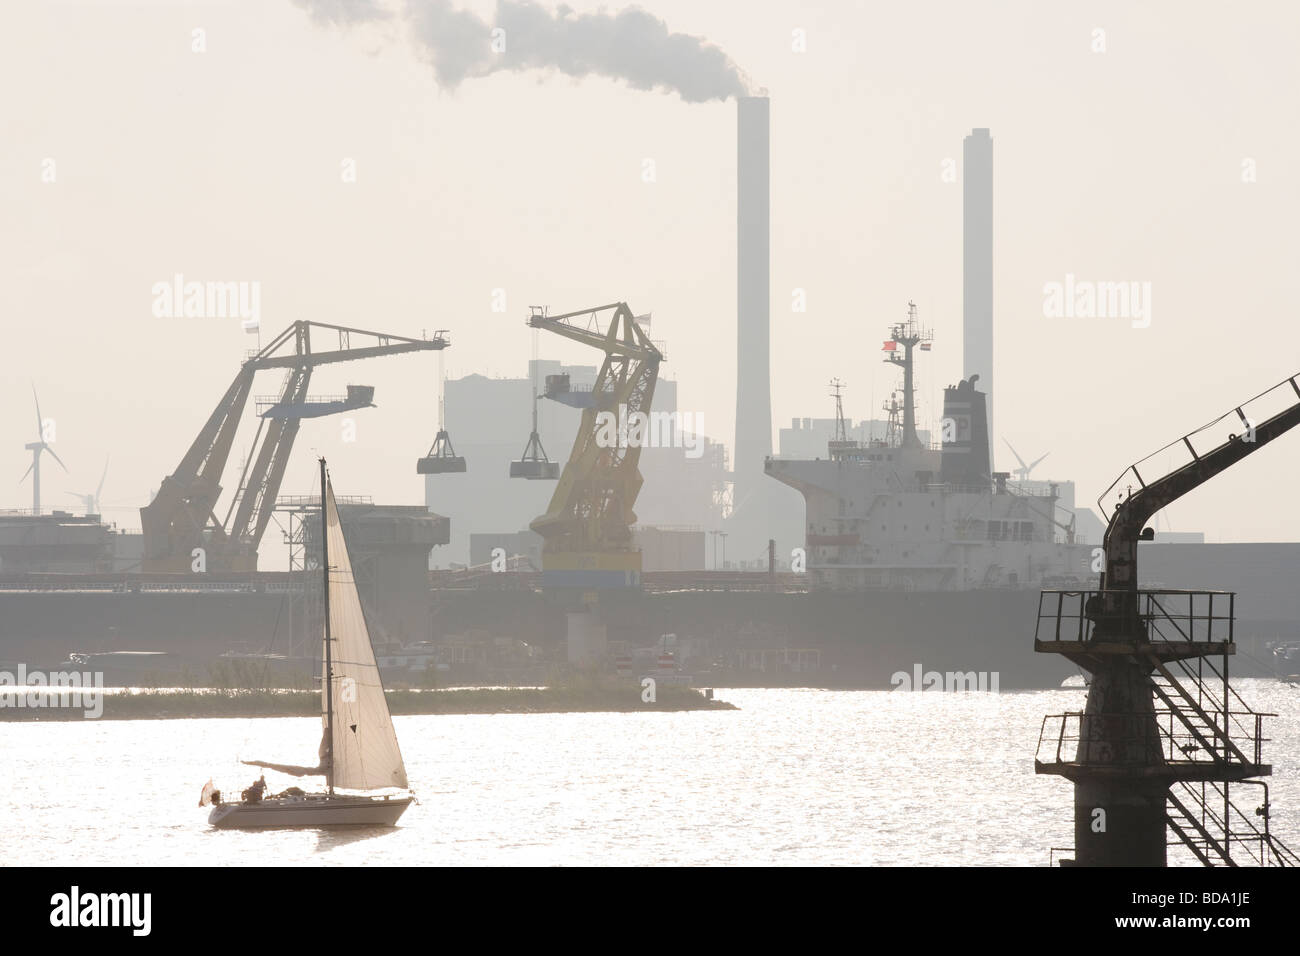 Il porto di Amsterdam con banchine di carico, freighter, nave a vela e Nuon Hemweg centrali a carbone e naturali-alimentati a gas con impianti di alimentazione. Foto Stock